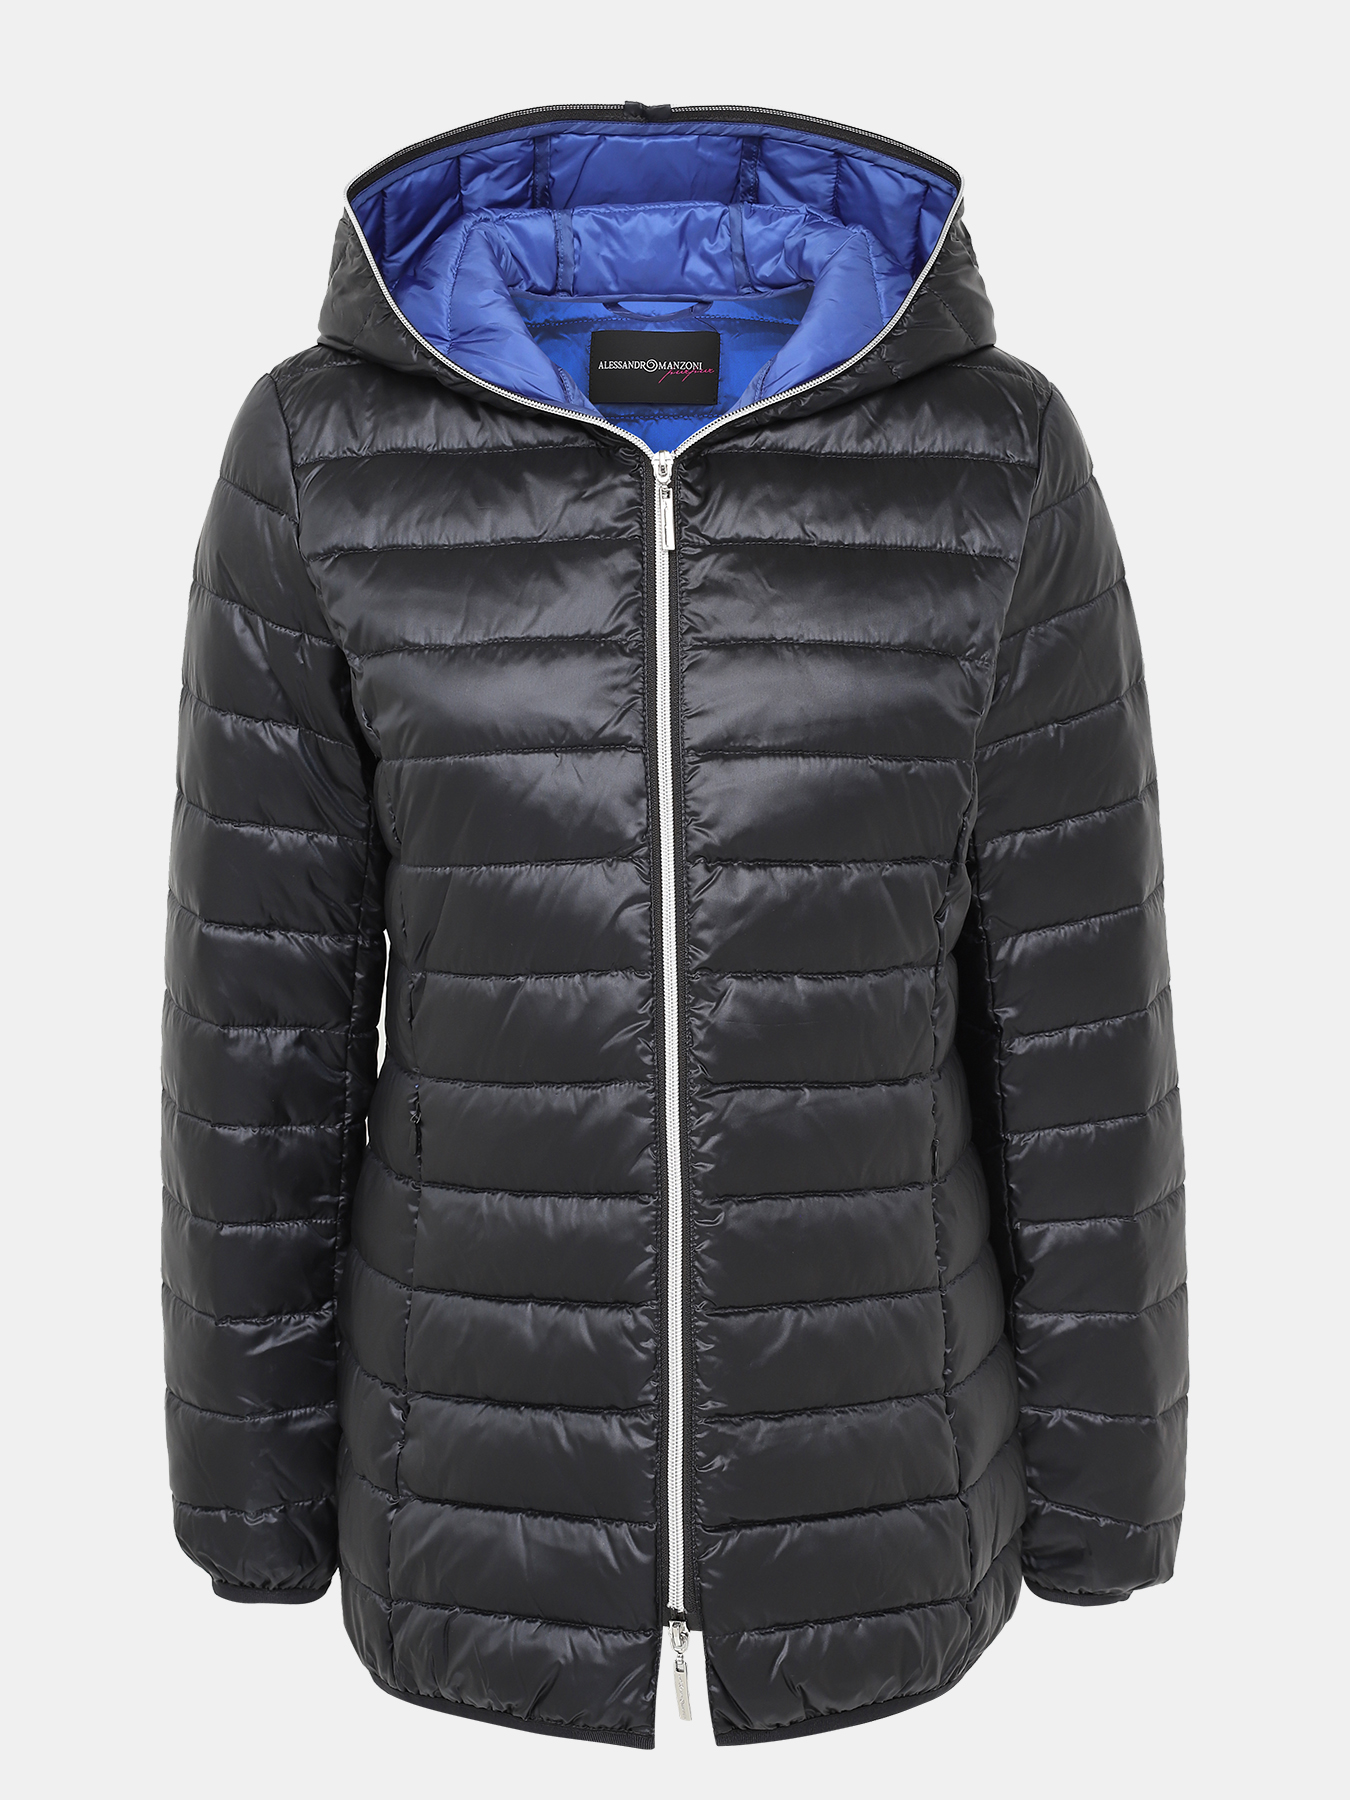 Куртка Alessandro Manzoni Purpur 405298-056, цвет темно-синий, размер 52-54